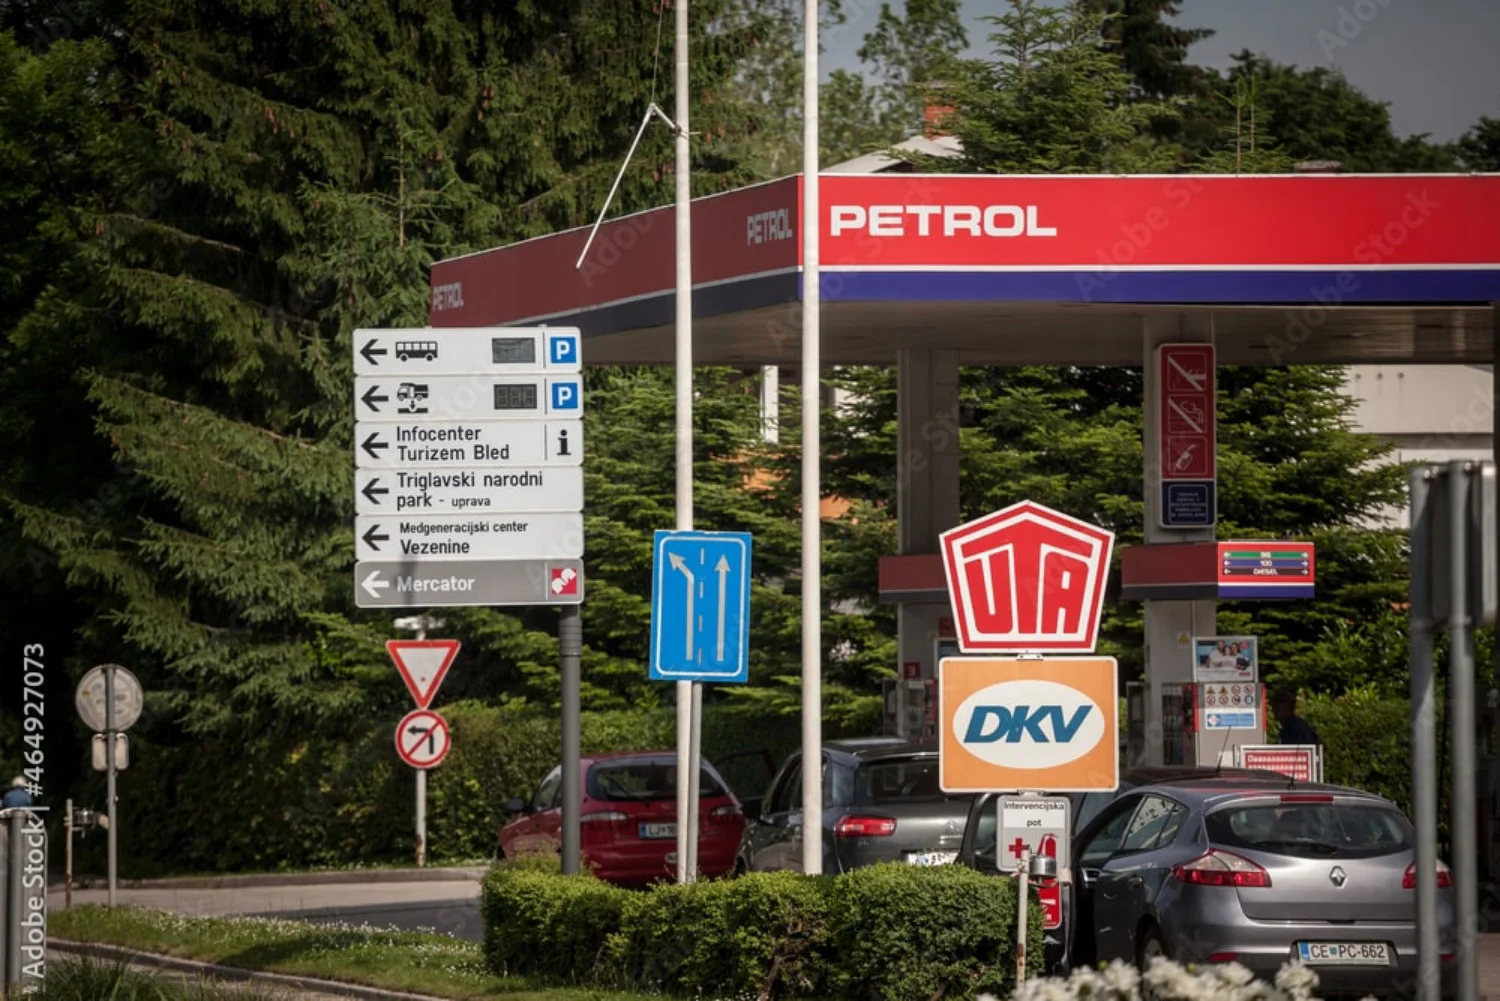 Marchio leader in Slovenia, Petrol è considerato un gruppo affidabile.